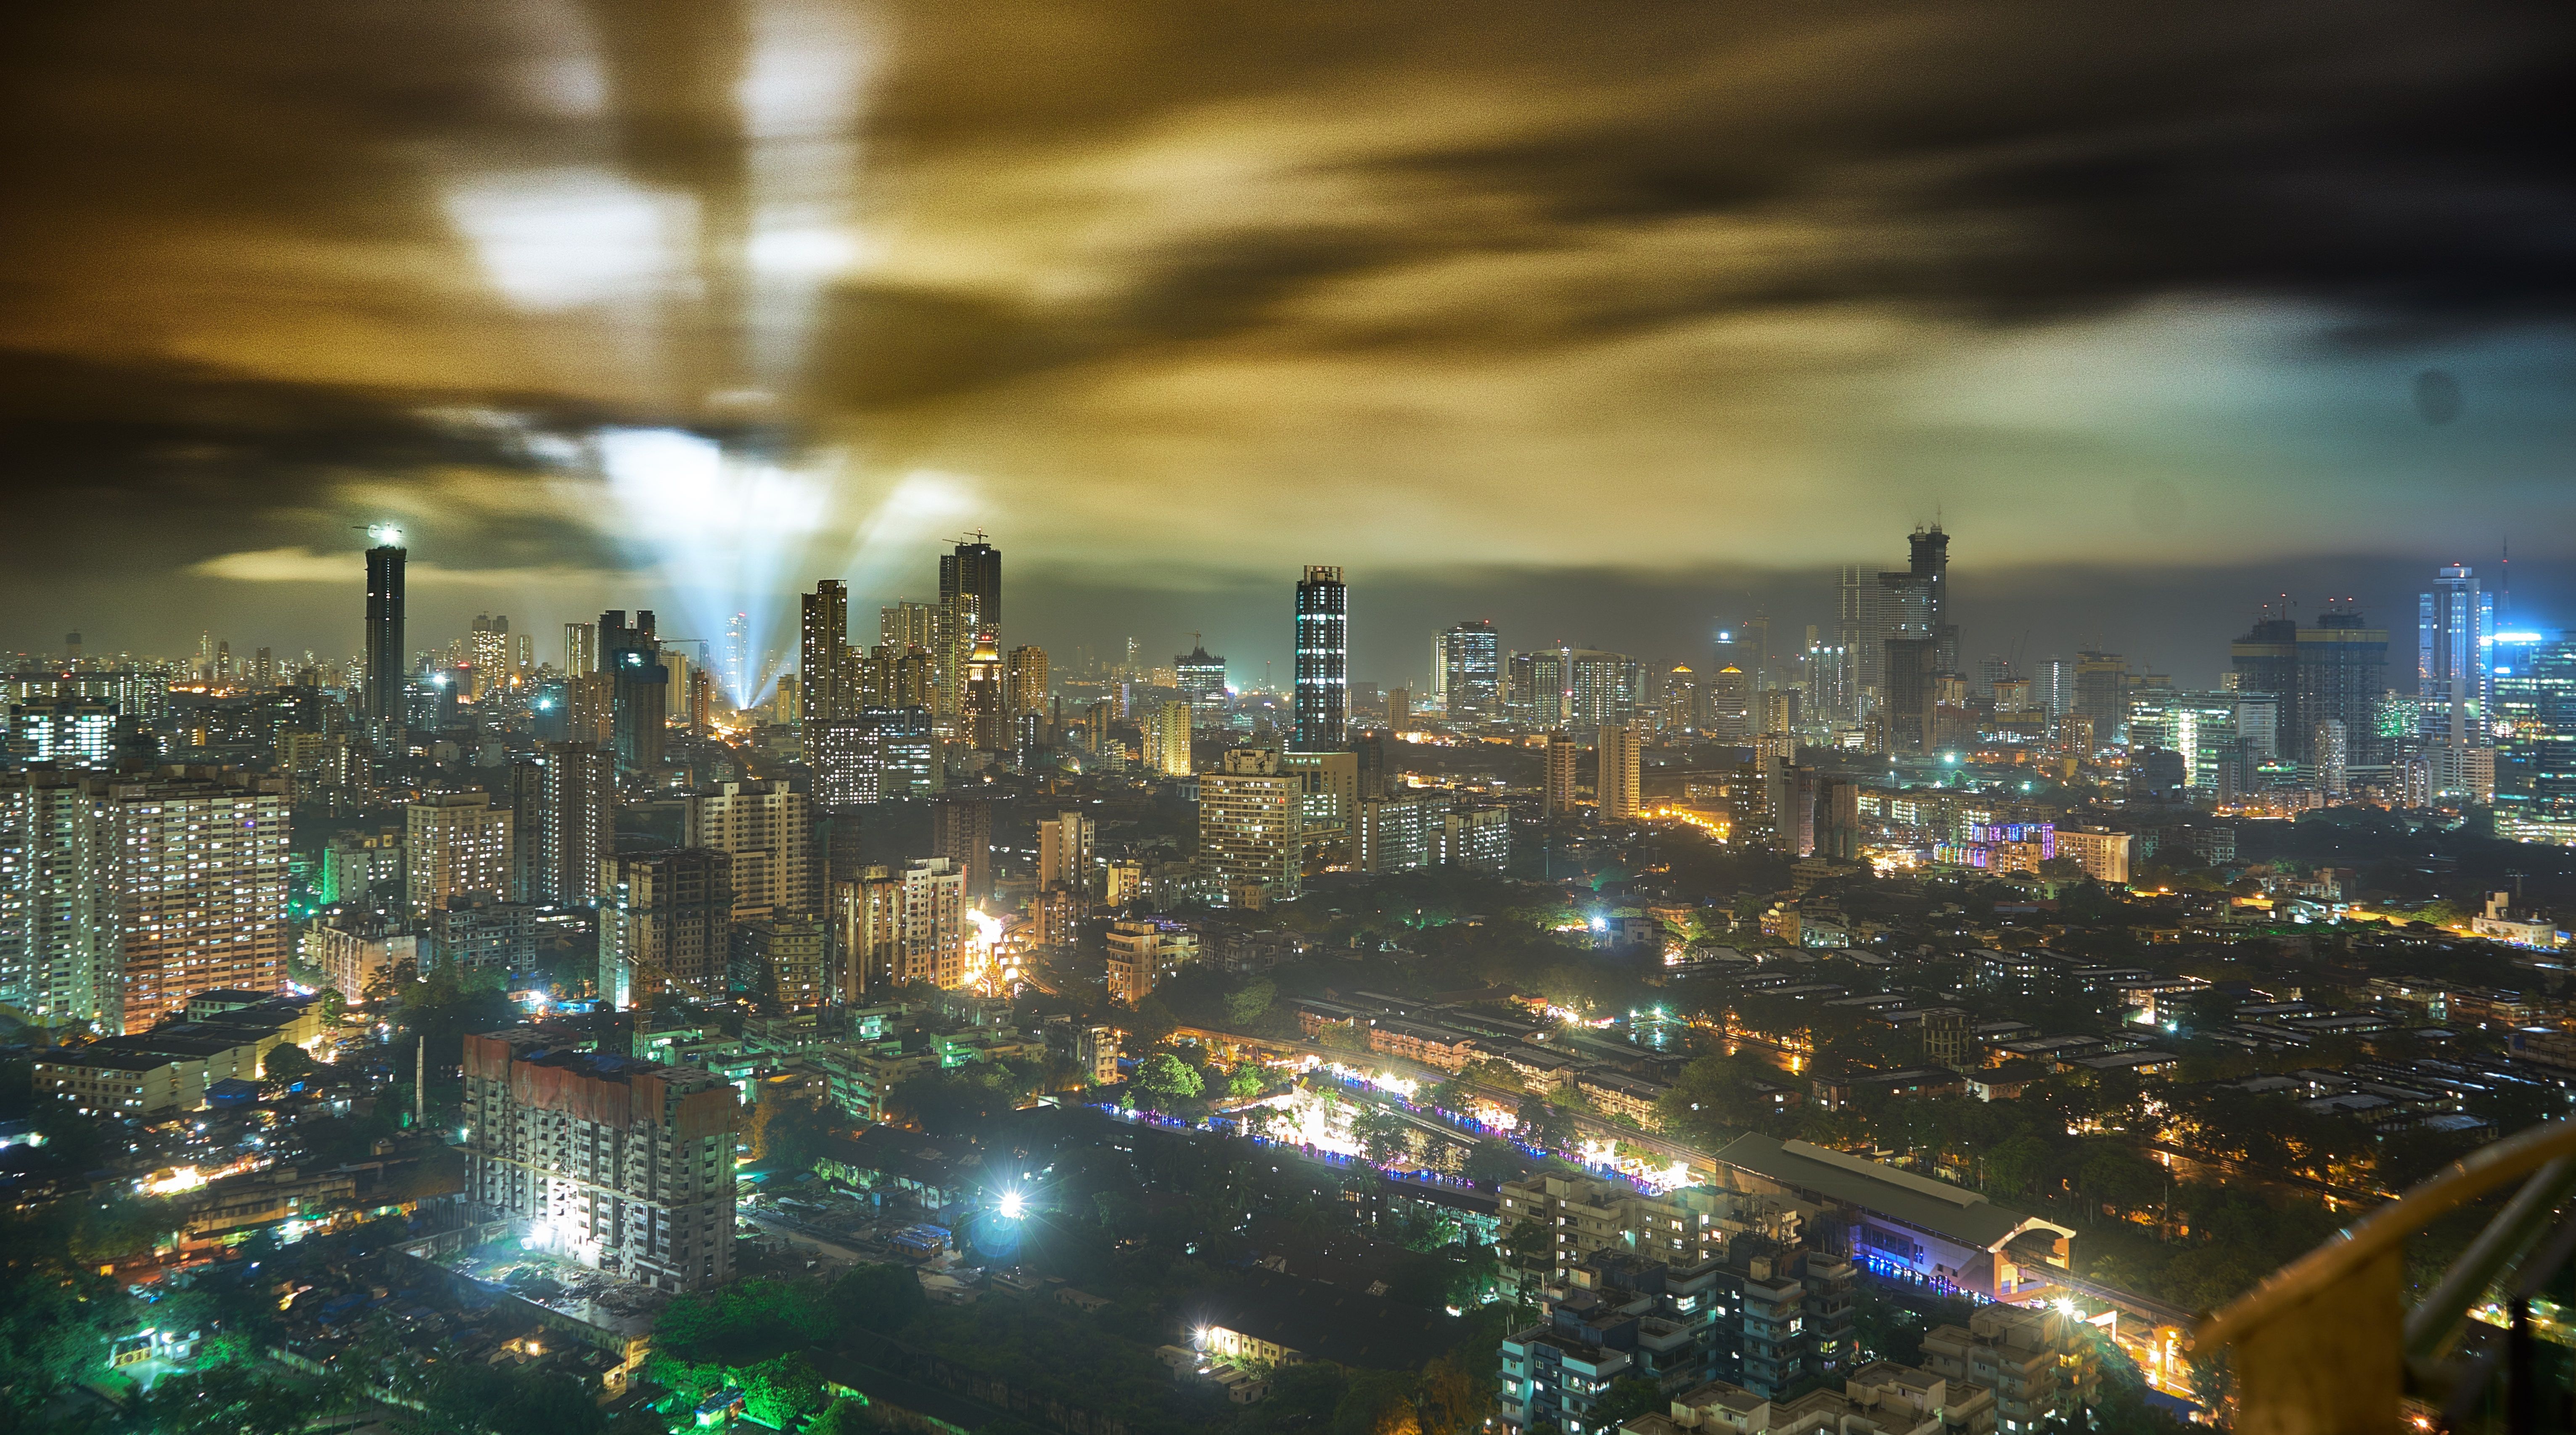 Mumbai Night free image